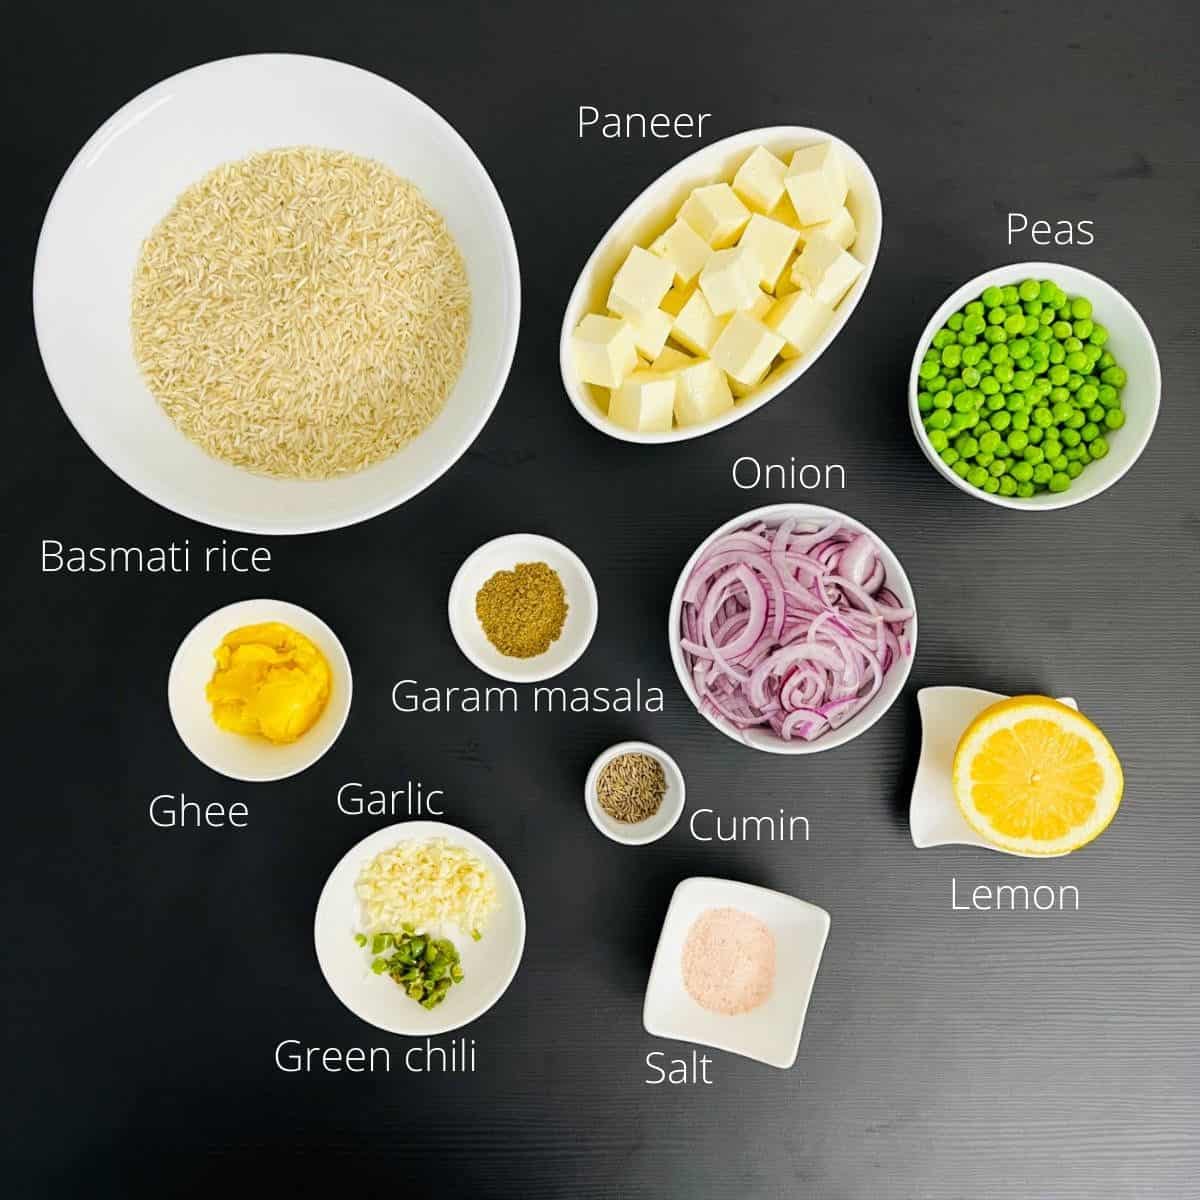 paneer peas pulao ingredients with labels.